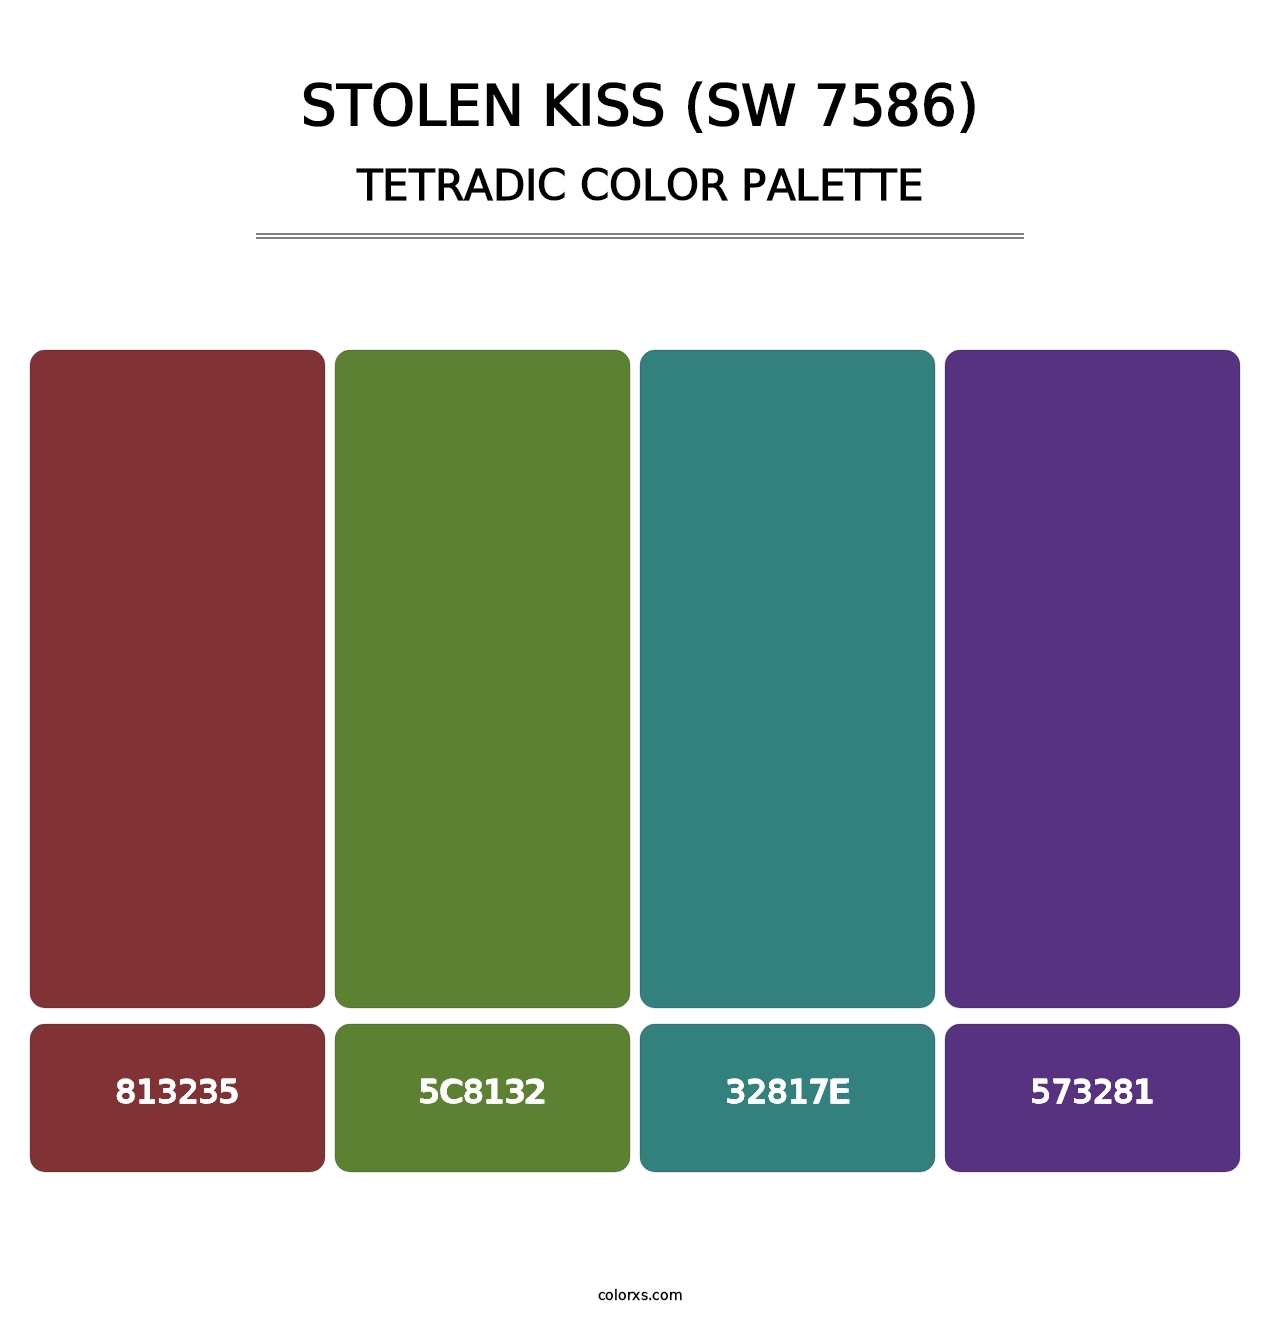 Stolen Kiss (SW 7586) - Tetradic Color Palette